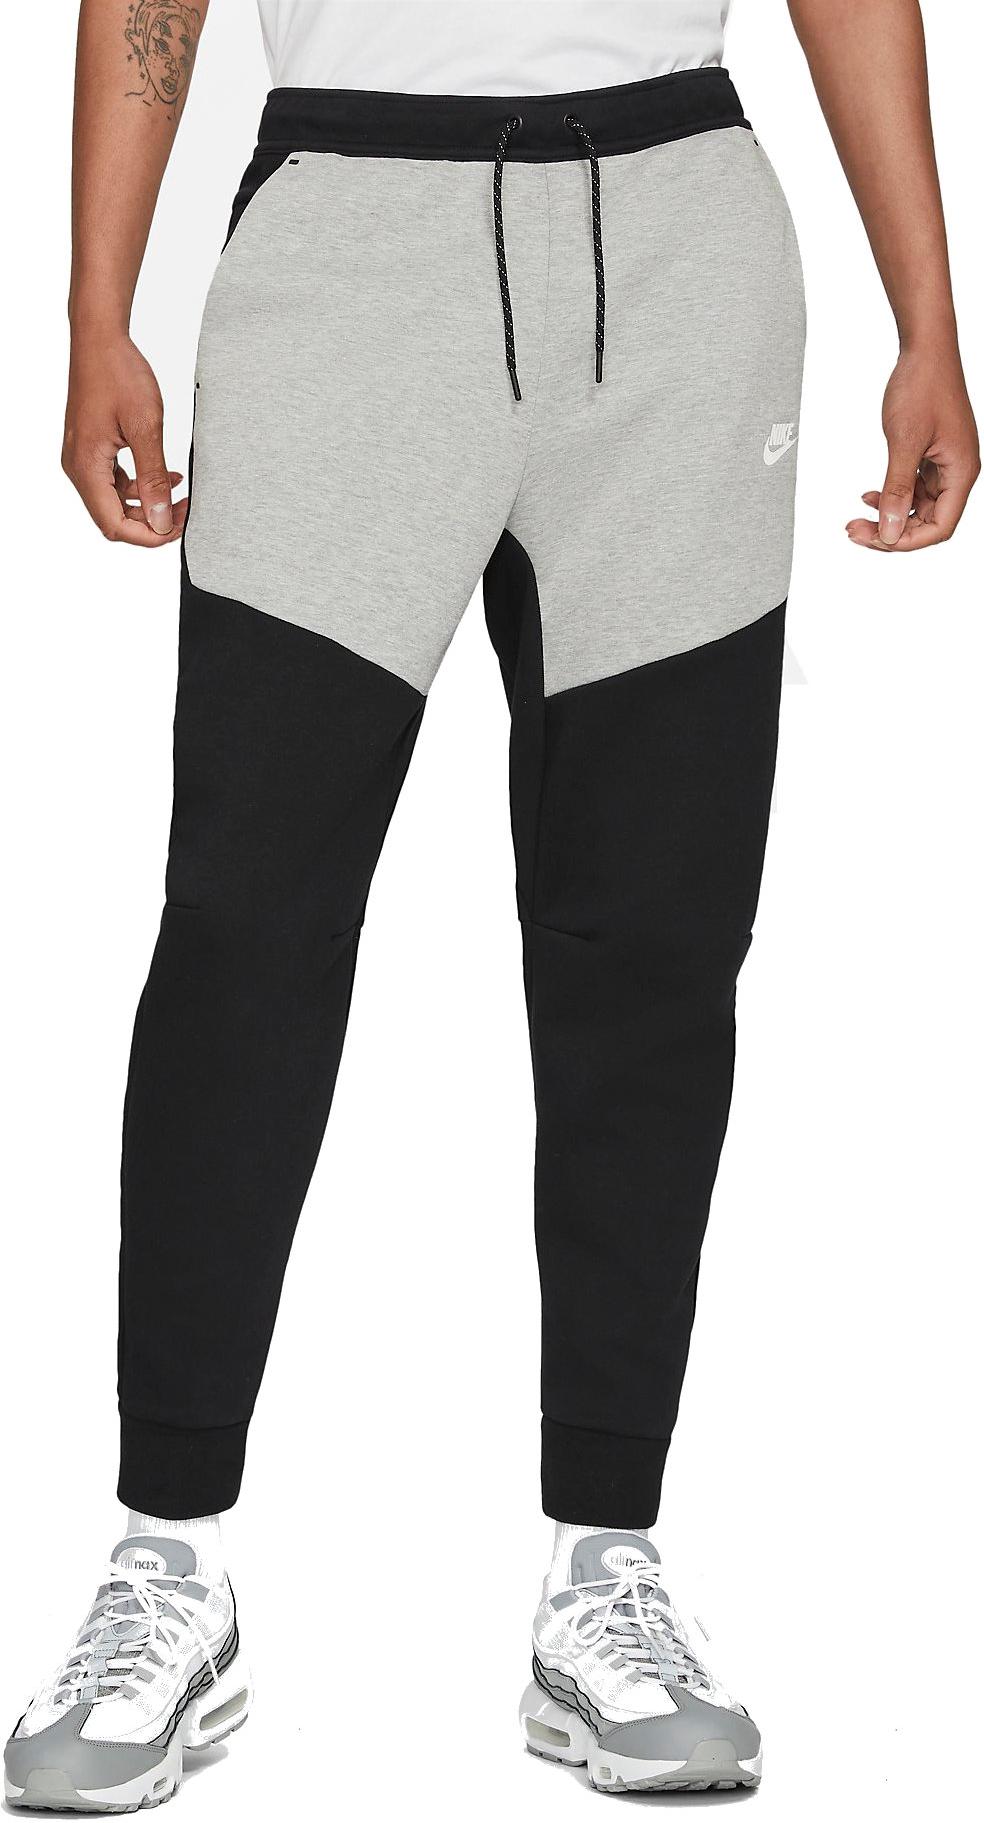 Bukser Nike Sportswear Tech Fleece Men s Joggers